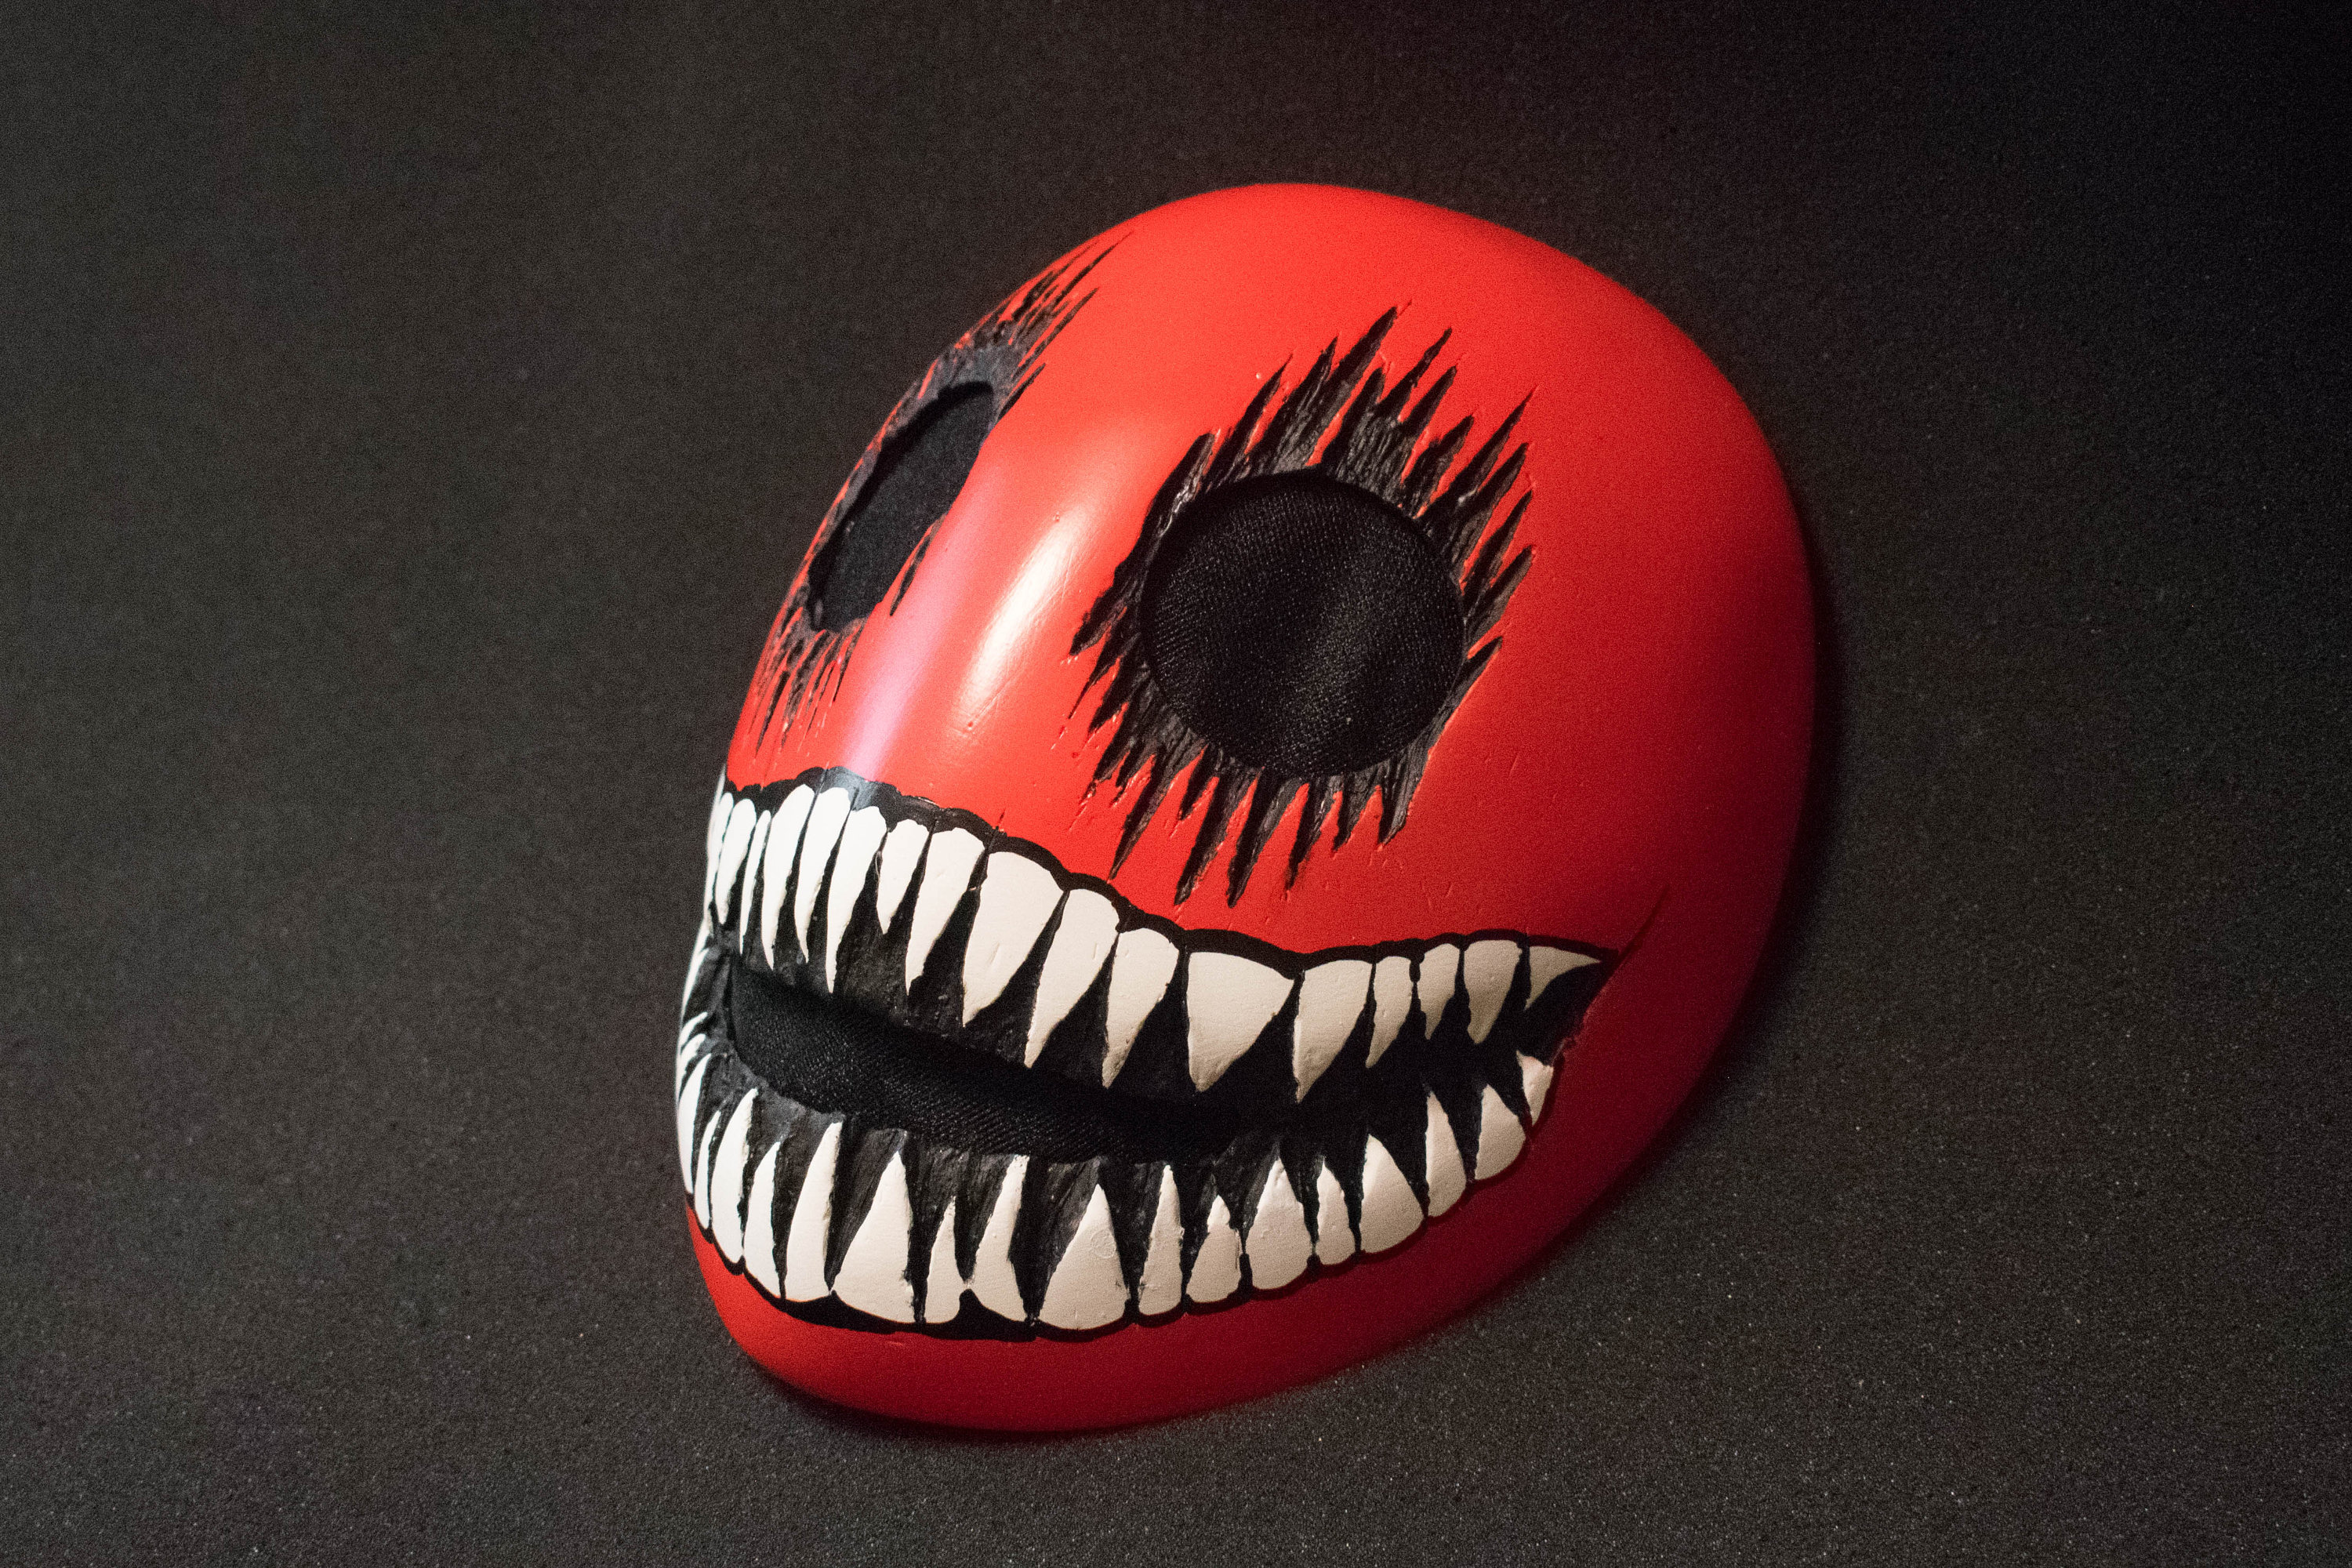 RARE!! Kagetane Hiruko Black Bullet Mask Wooden Mask Cosplay